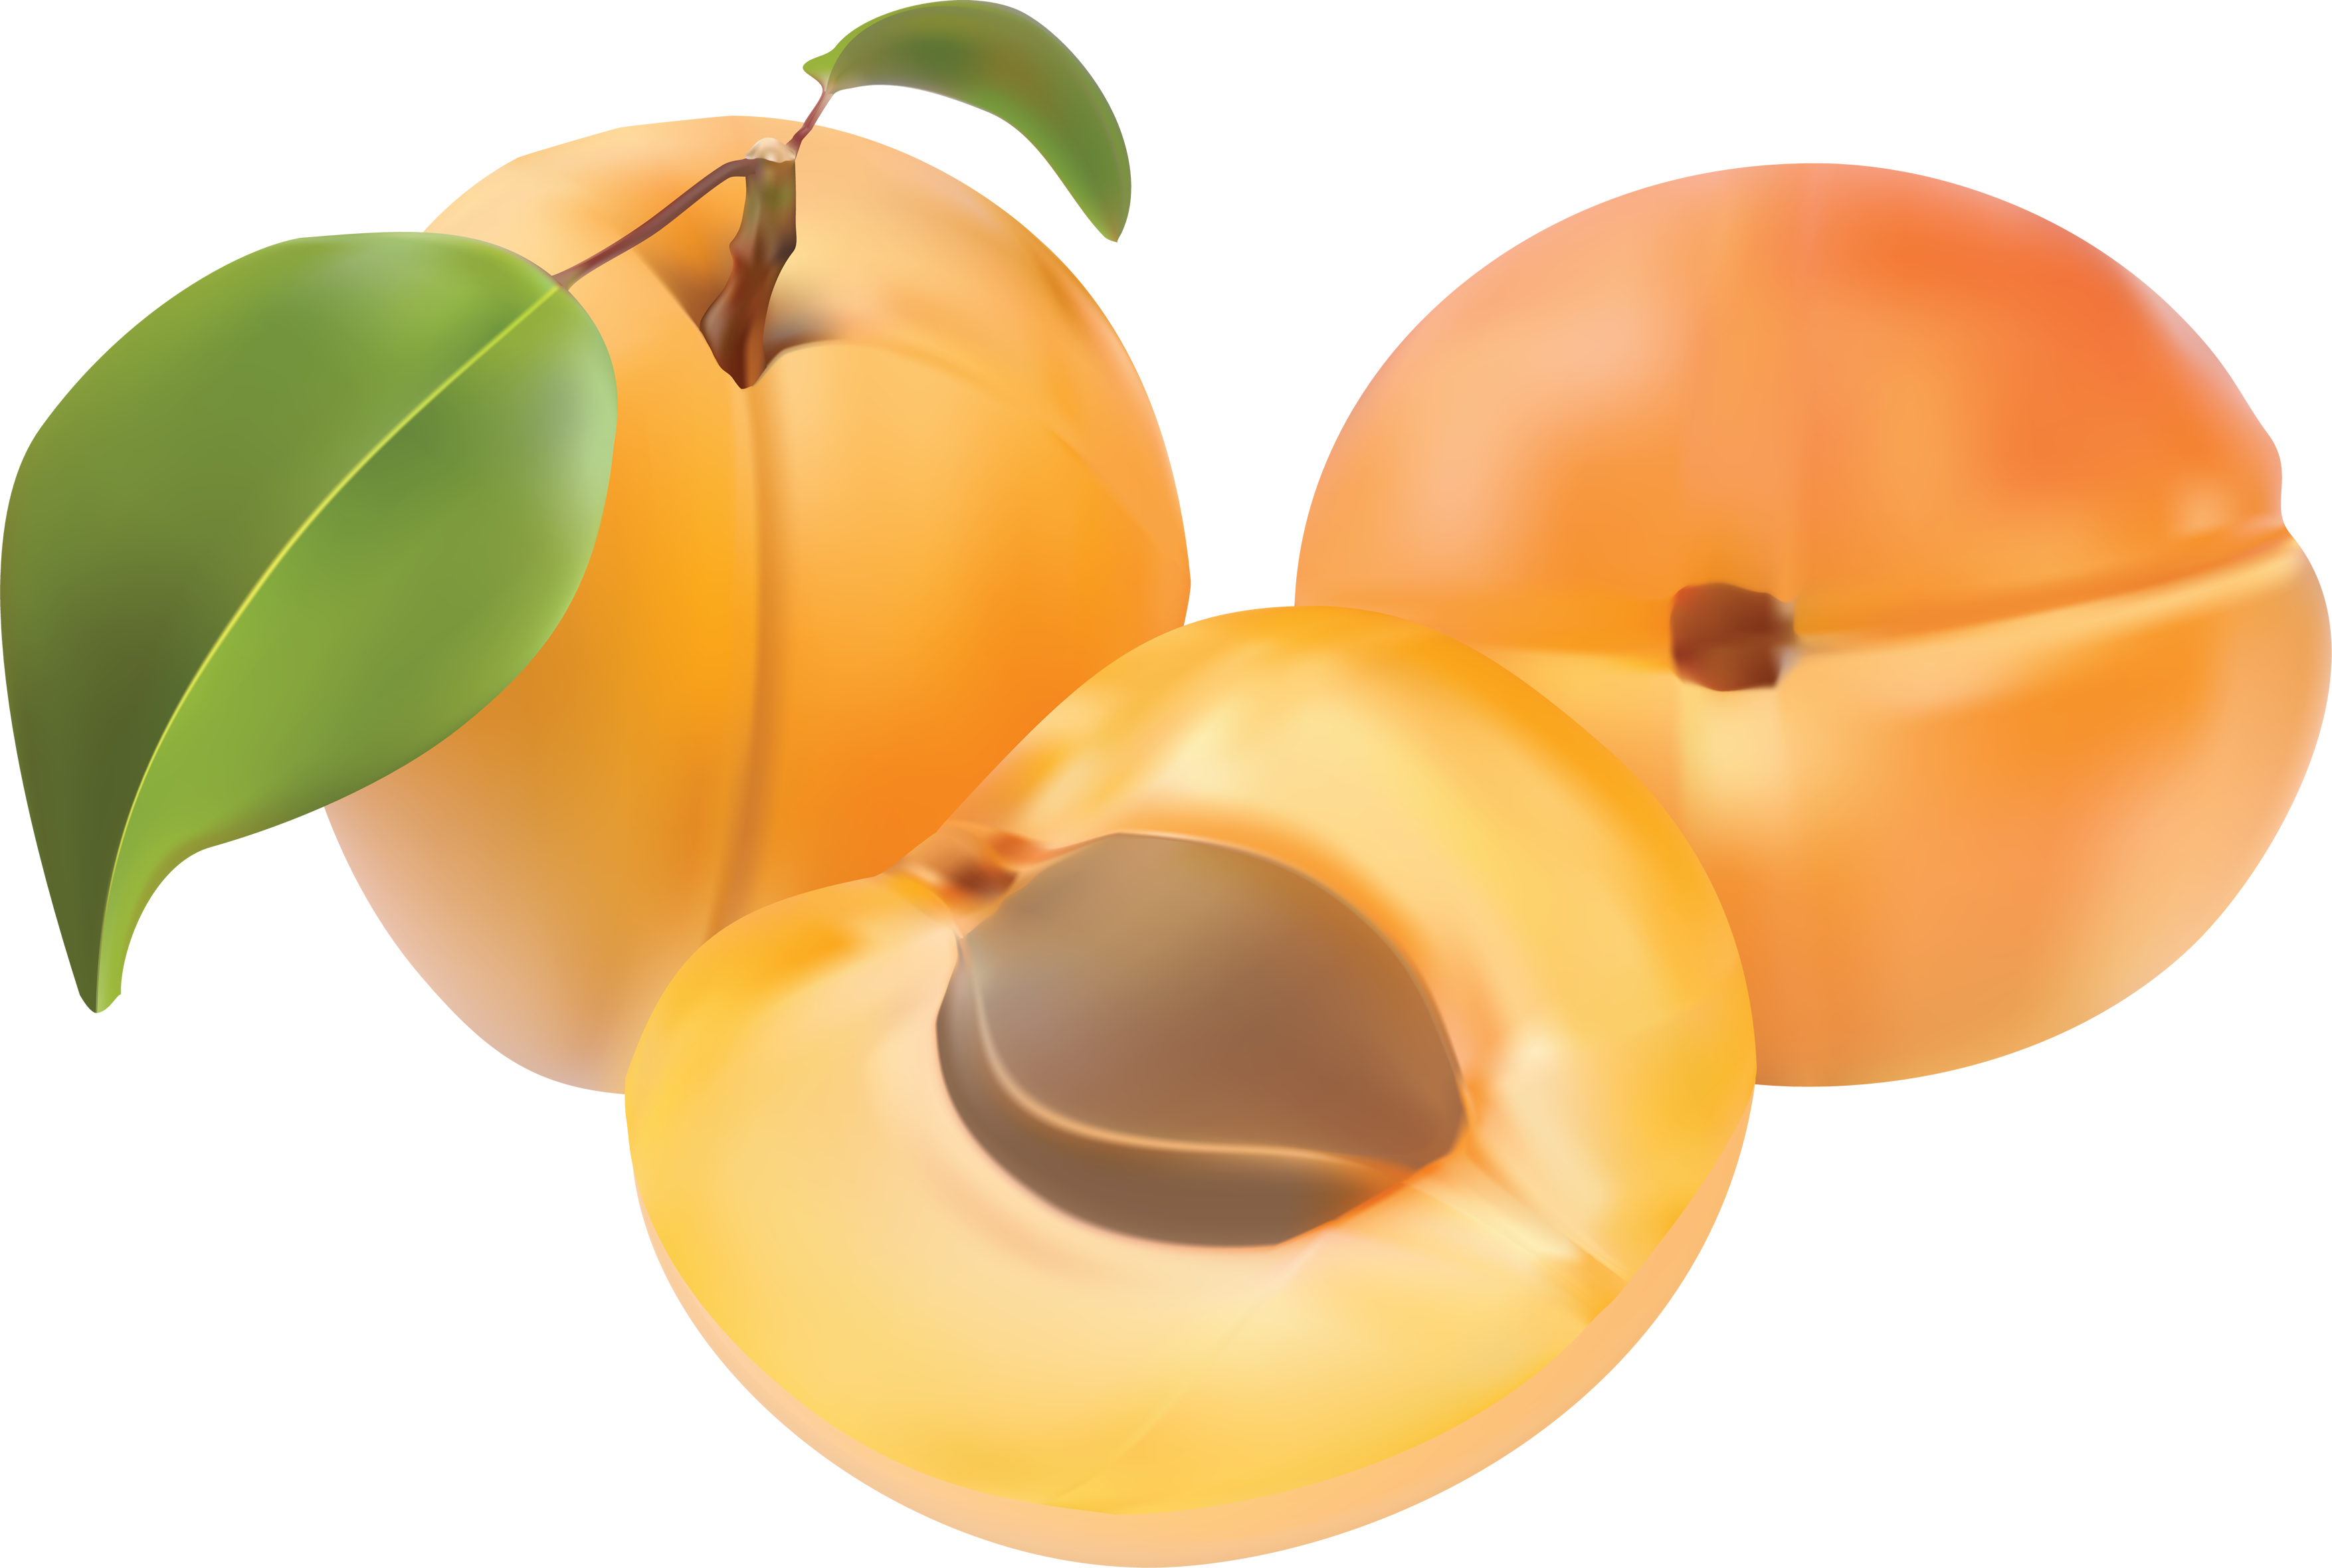 peaches clipart orange